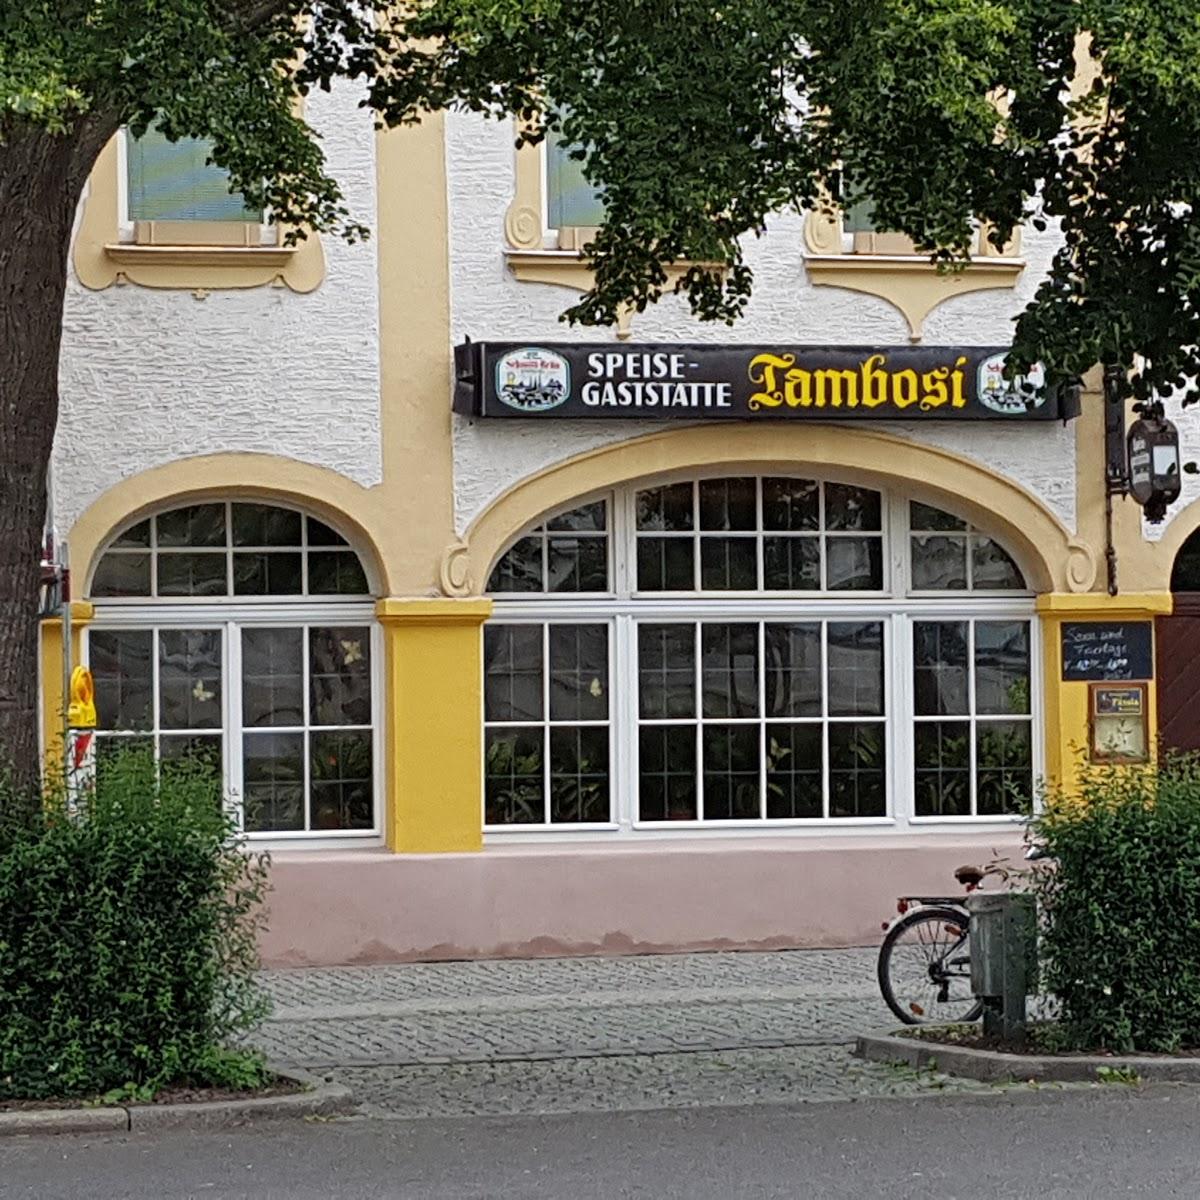 Restaurant "Tambosi" in Bamberg